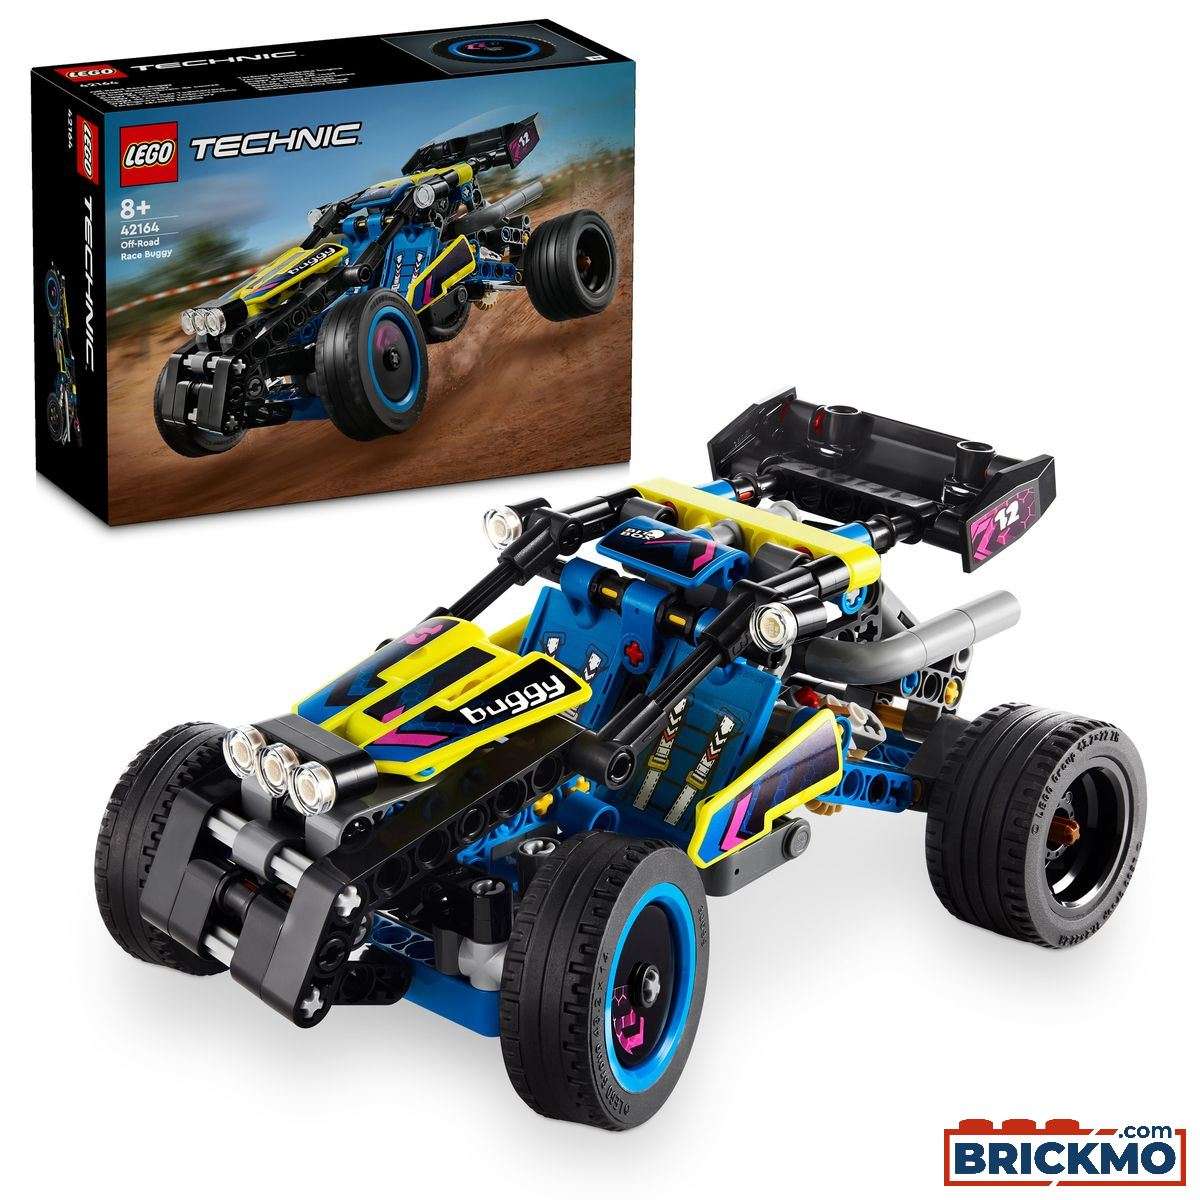 LEGO Technic 42164 Off-Road Race Buggy 42164